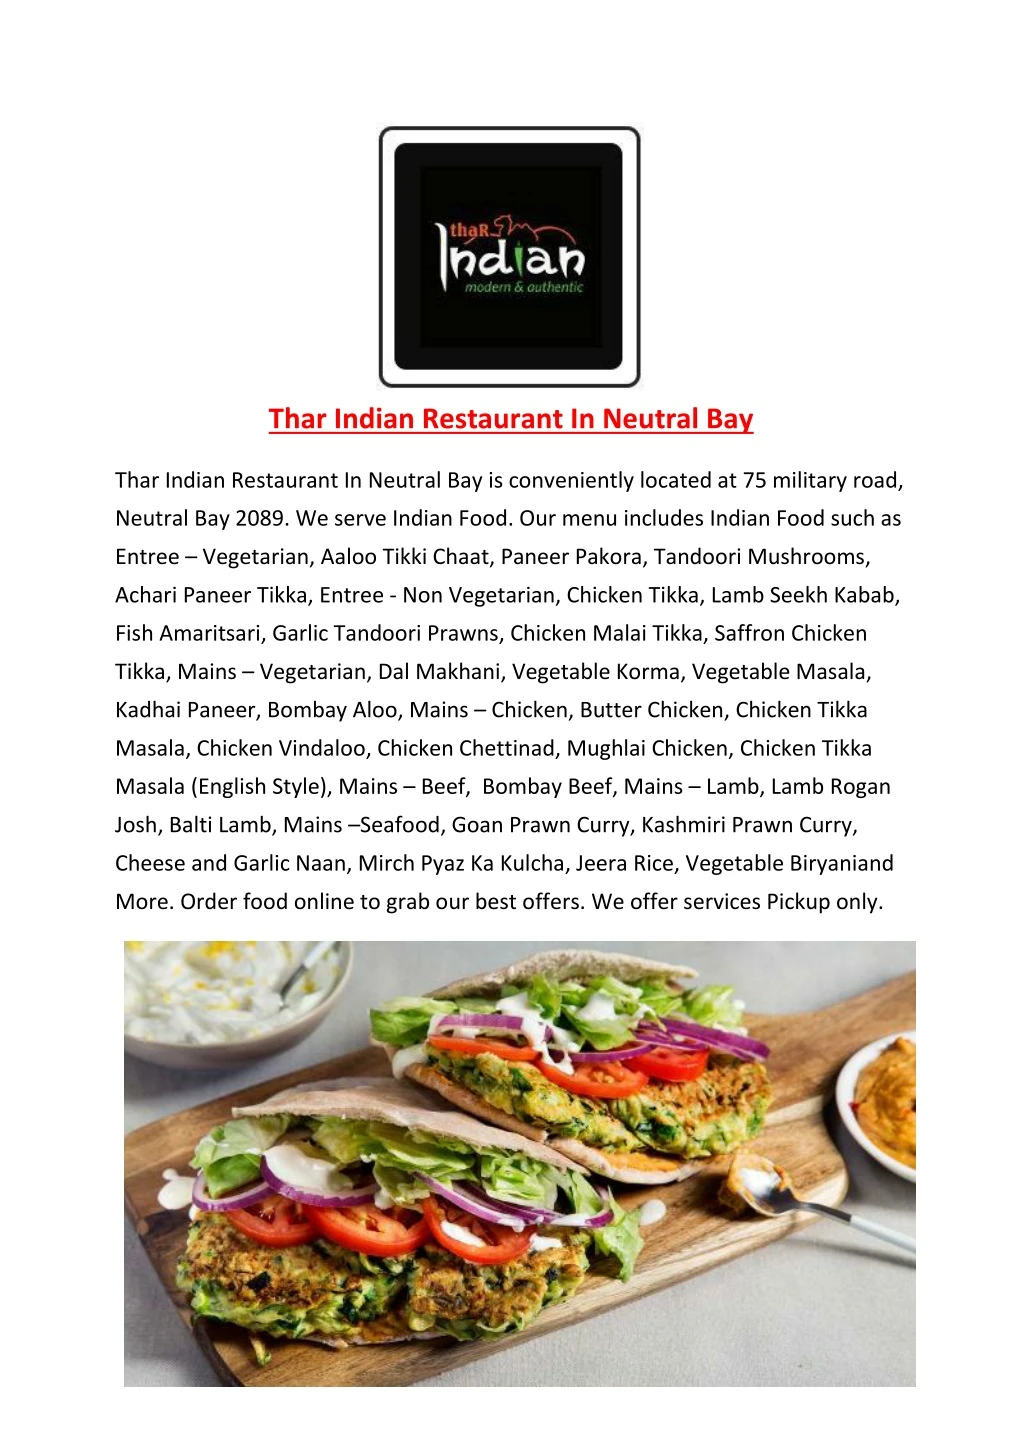 thar indian restaurant in neutral bay